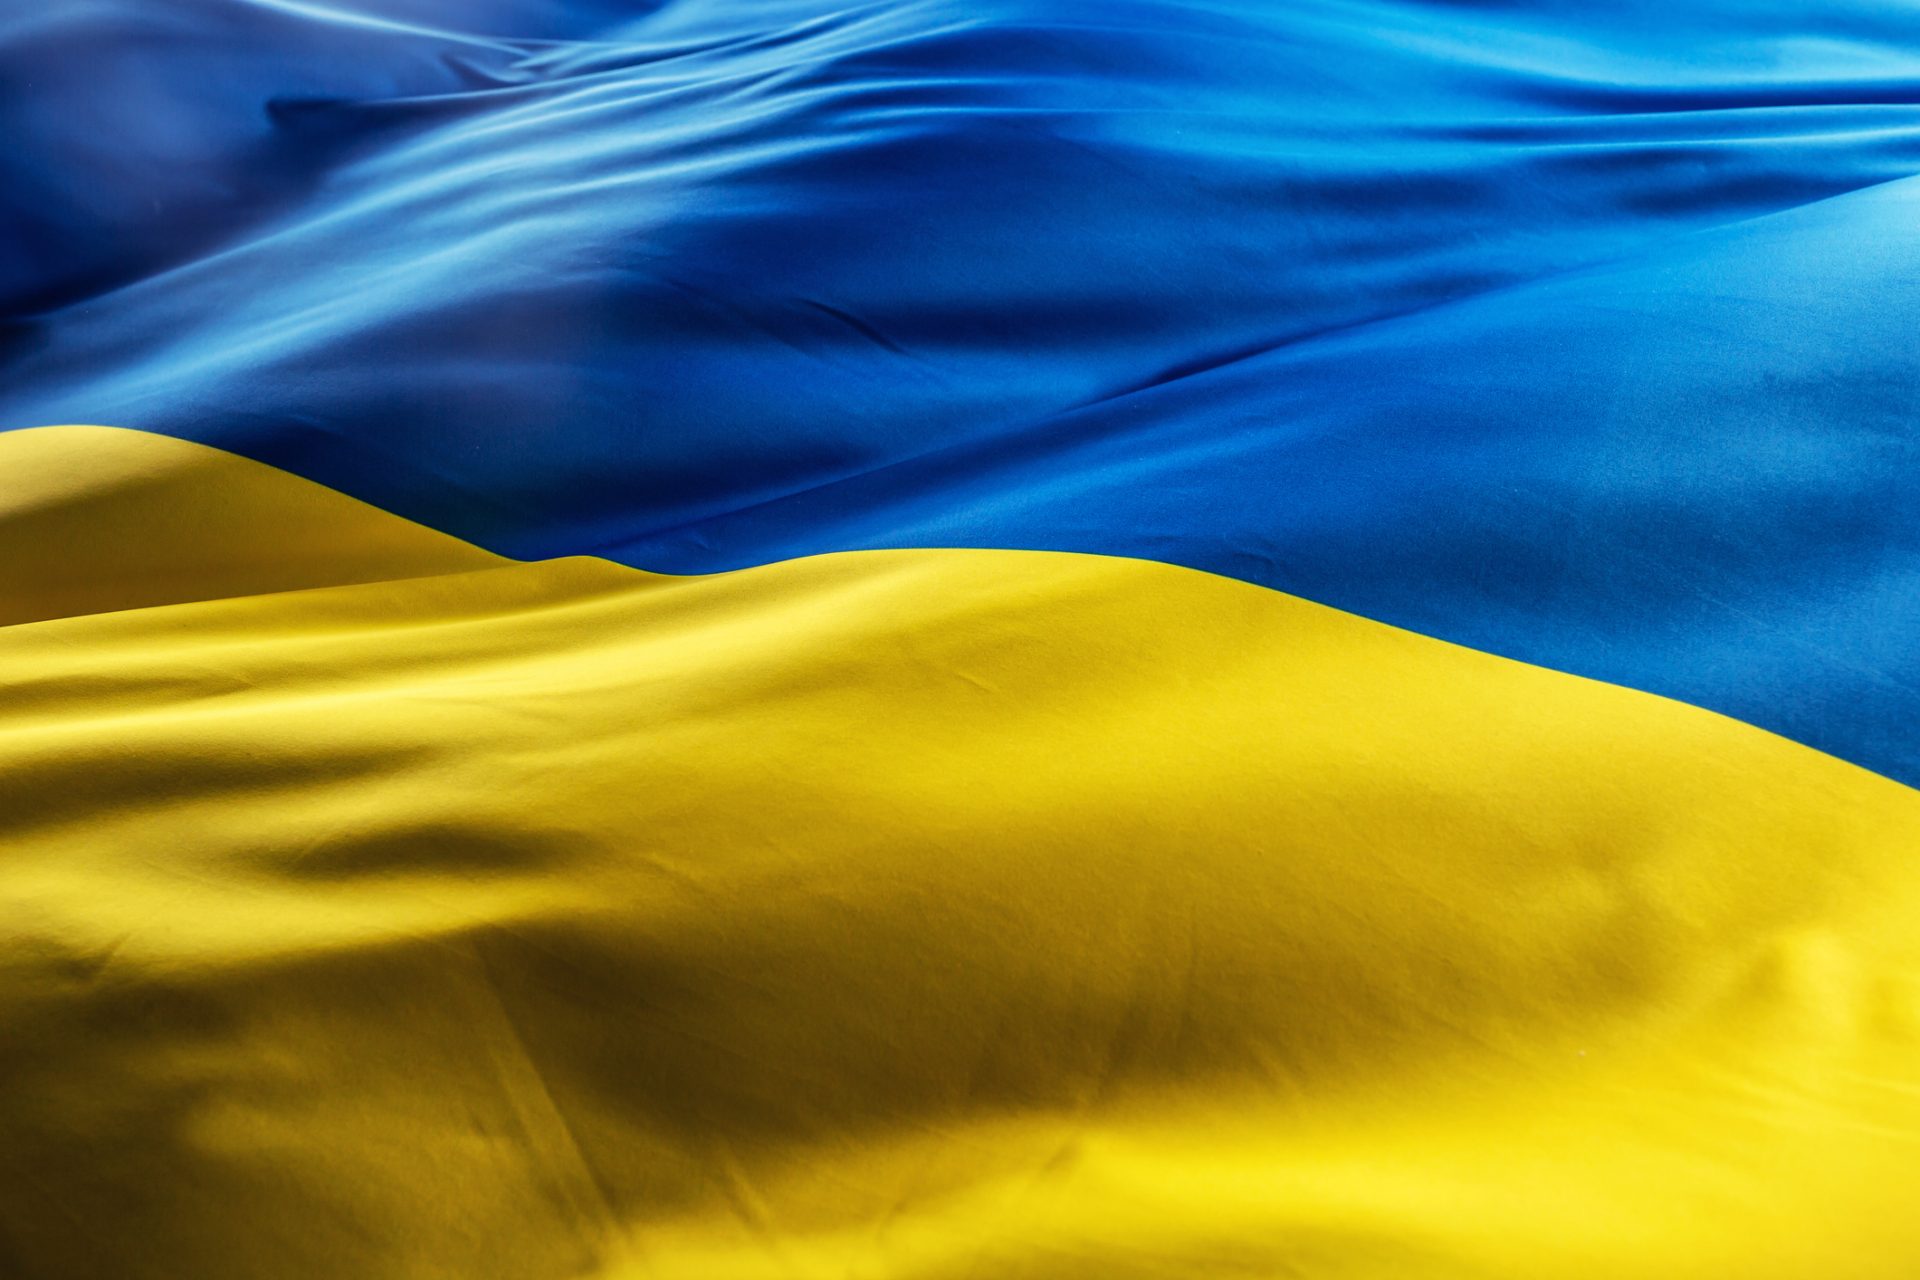 Le maggiori preoccupazioni degli ucraini (oltre alla guerra): i risultati di un sondaggio